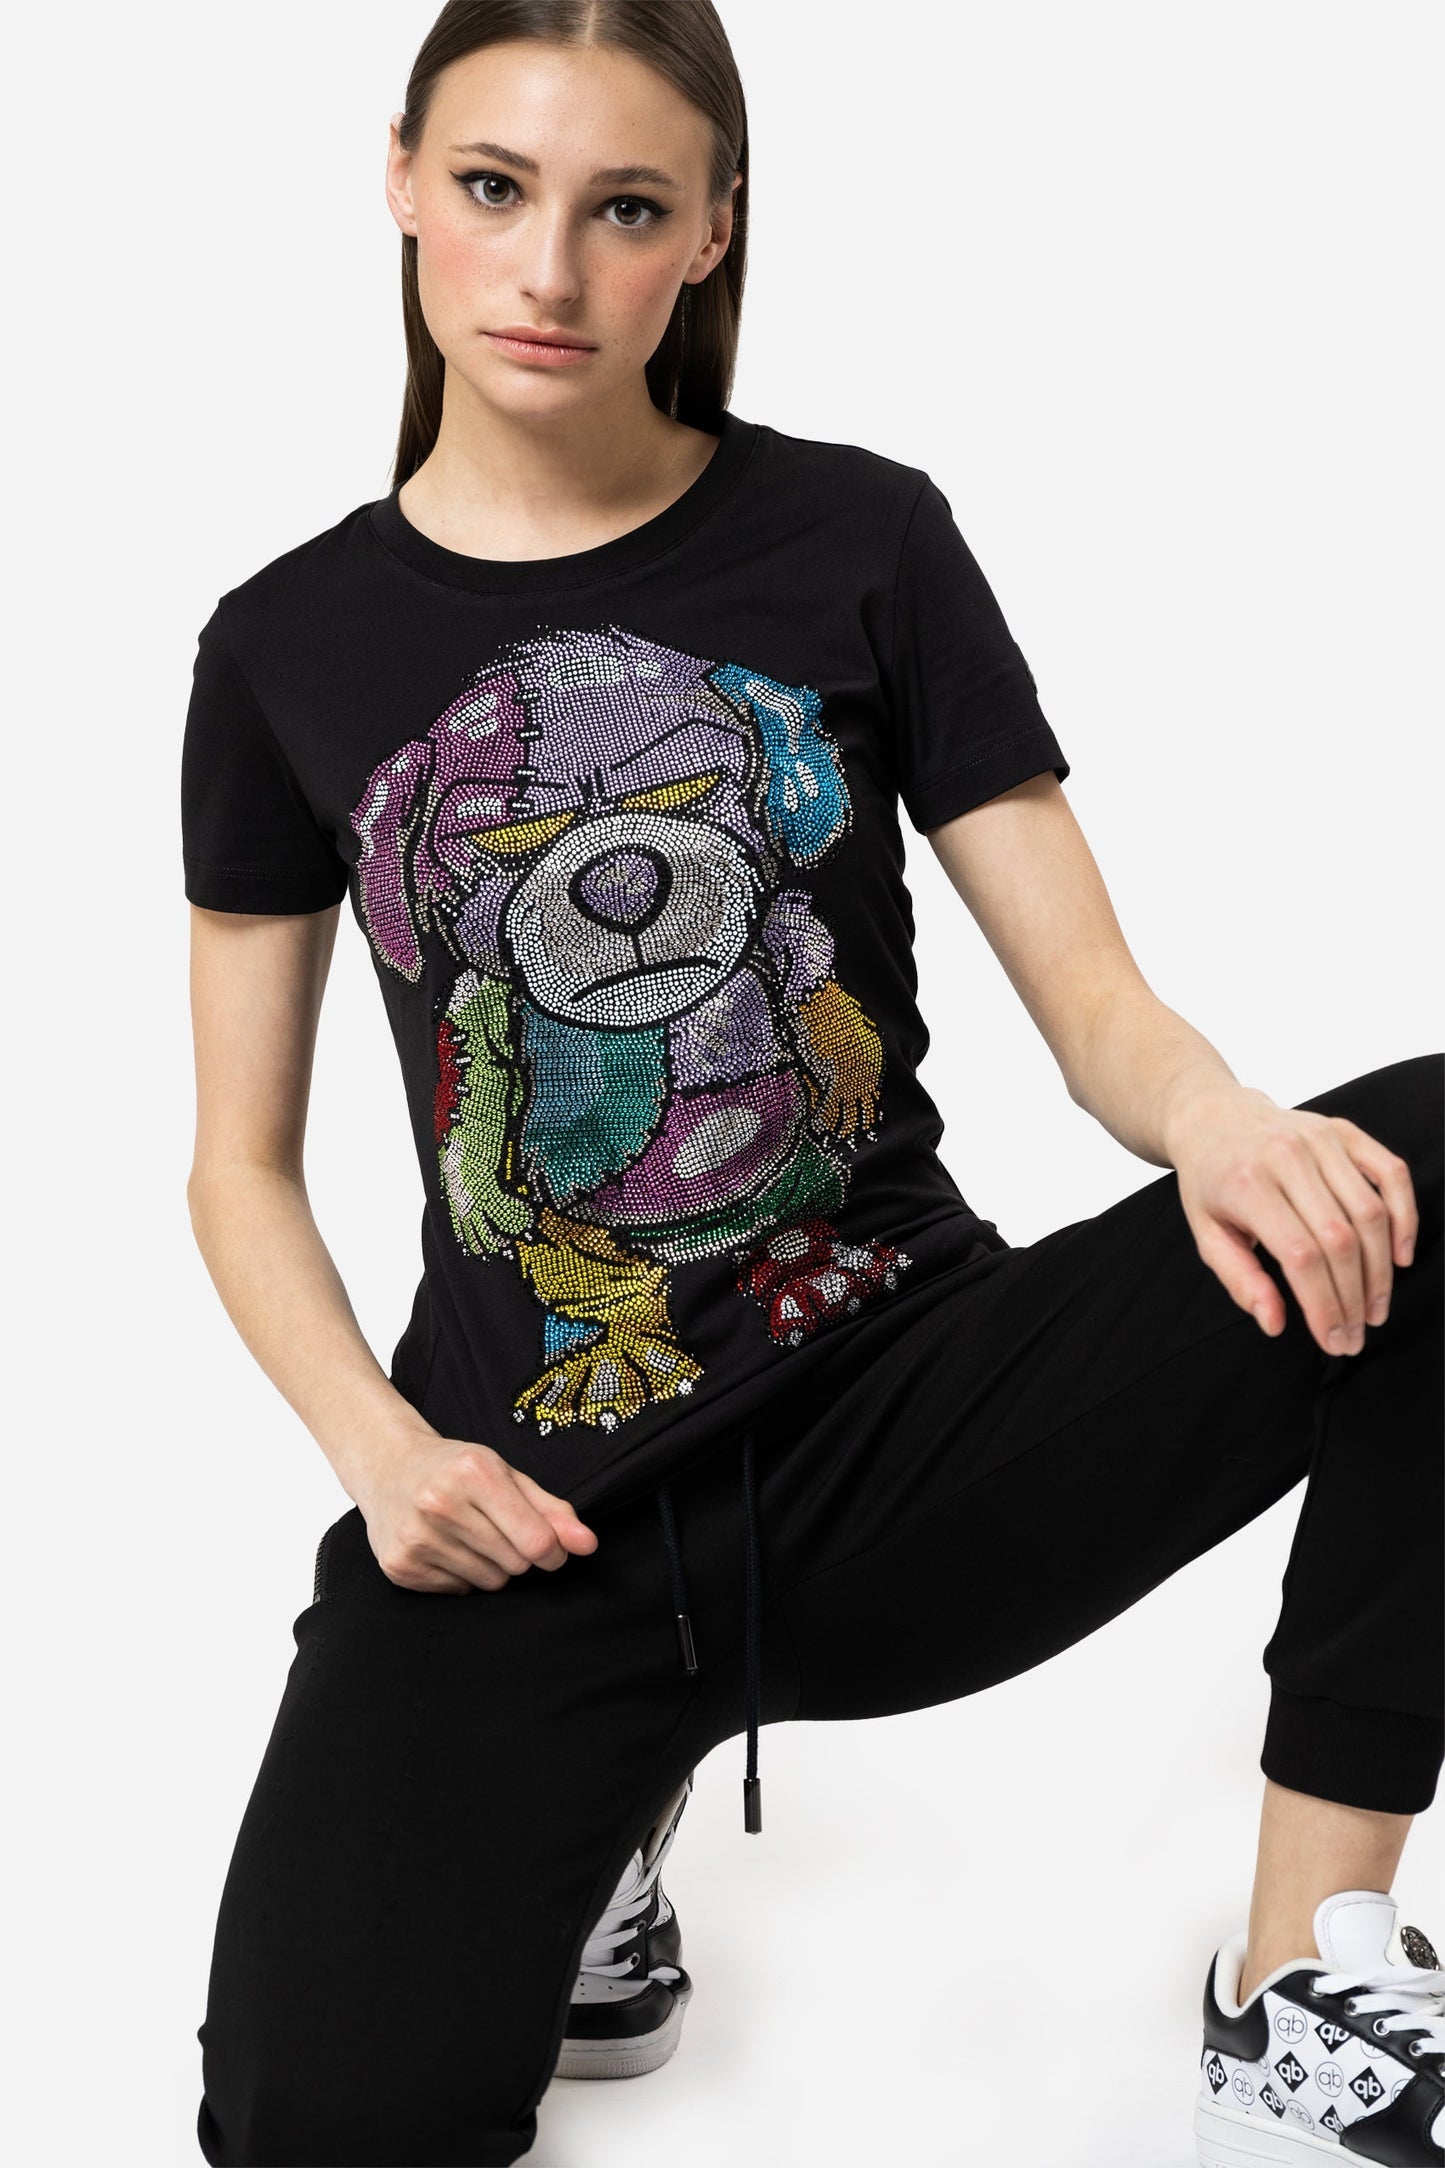 Crystal Rainbow Teddy Tshirt - Limited to 300